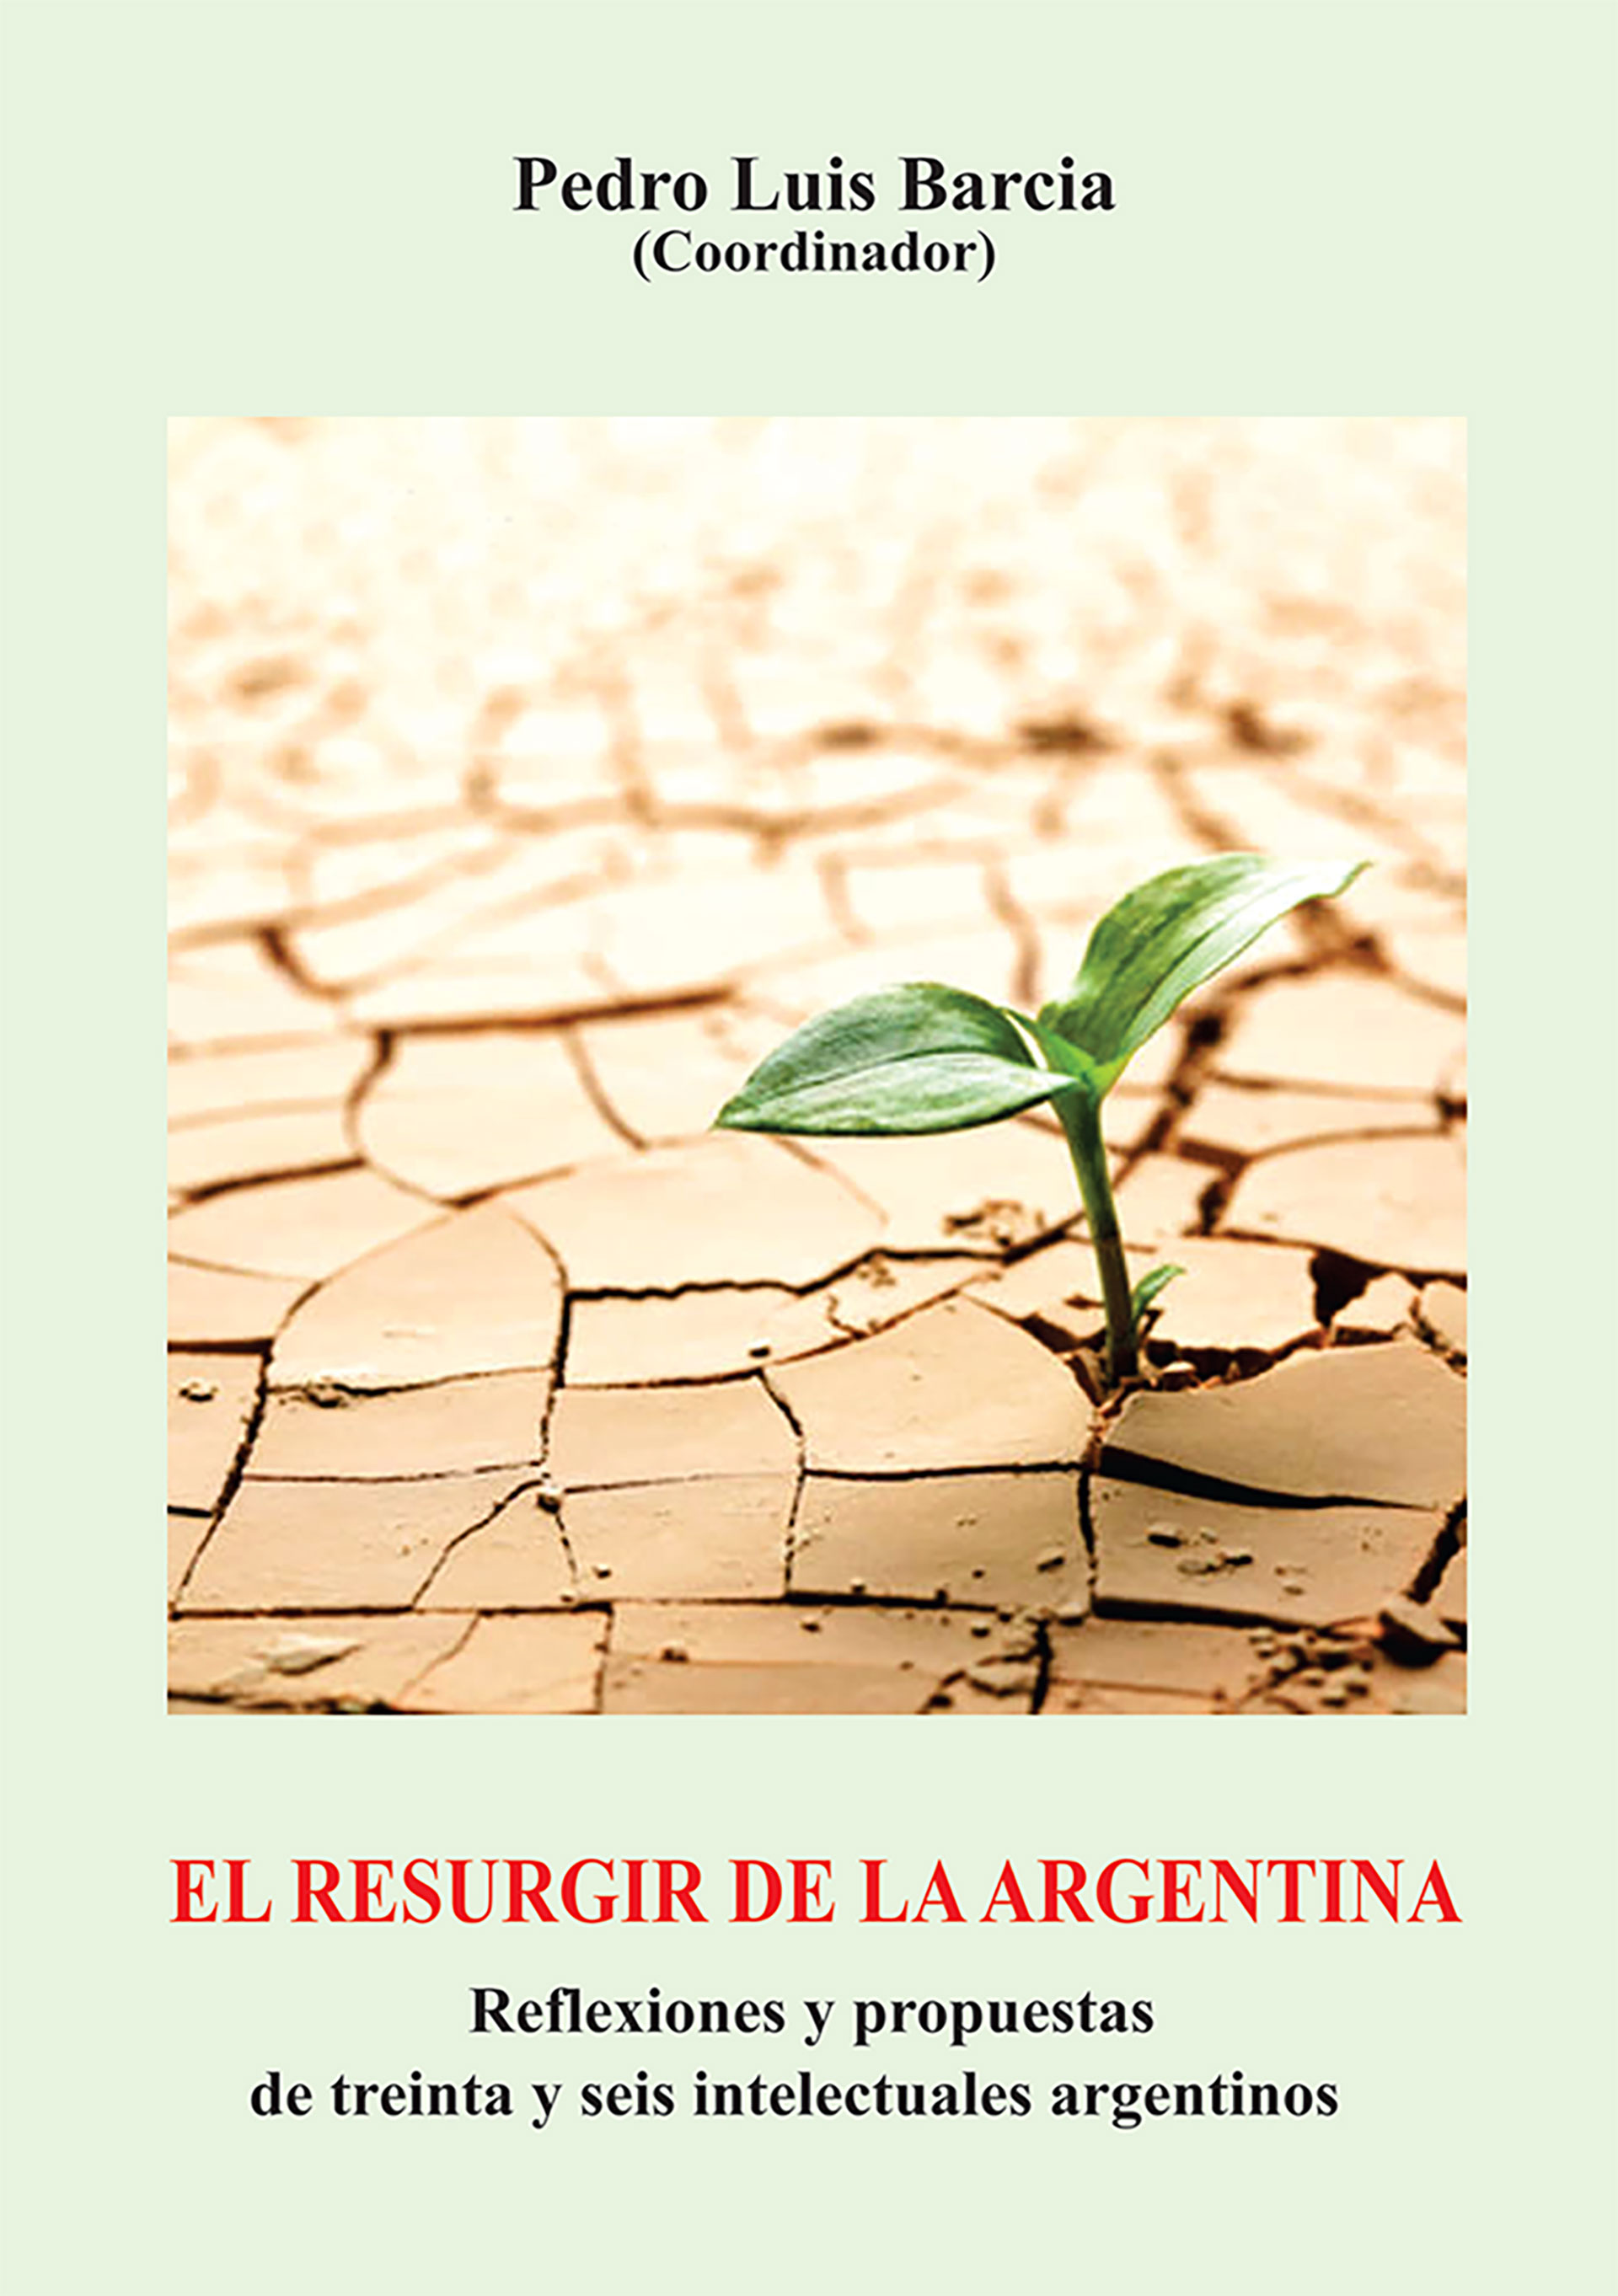 El libro fue coordinado por Pedro Luis Barcia